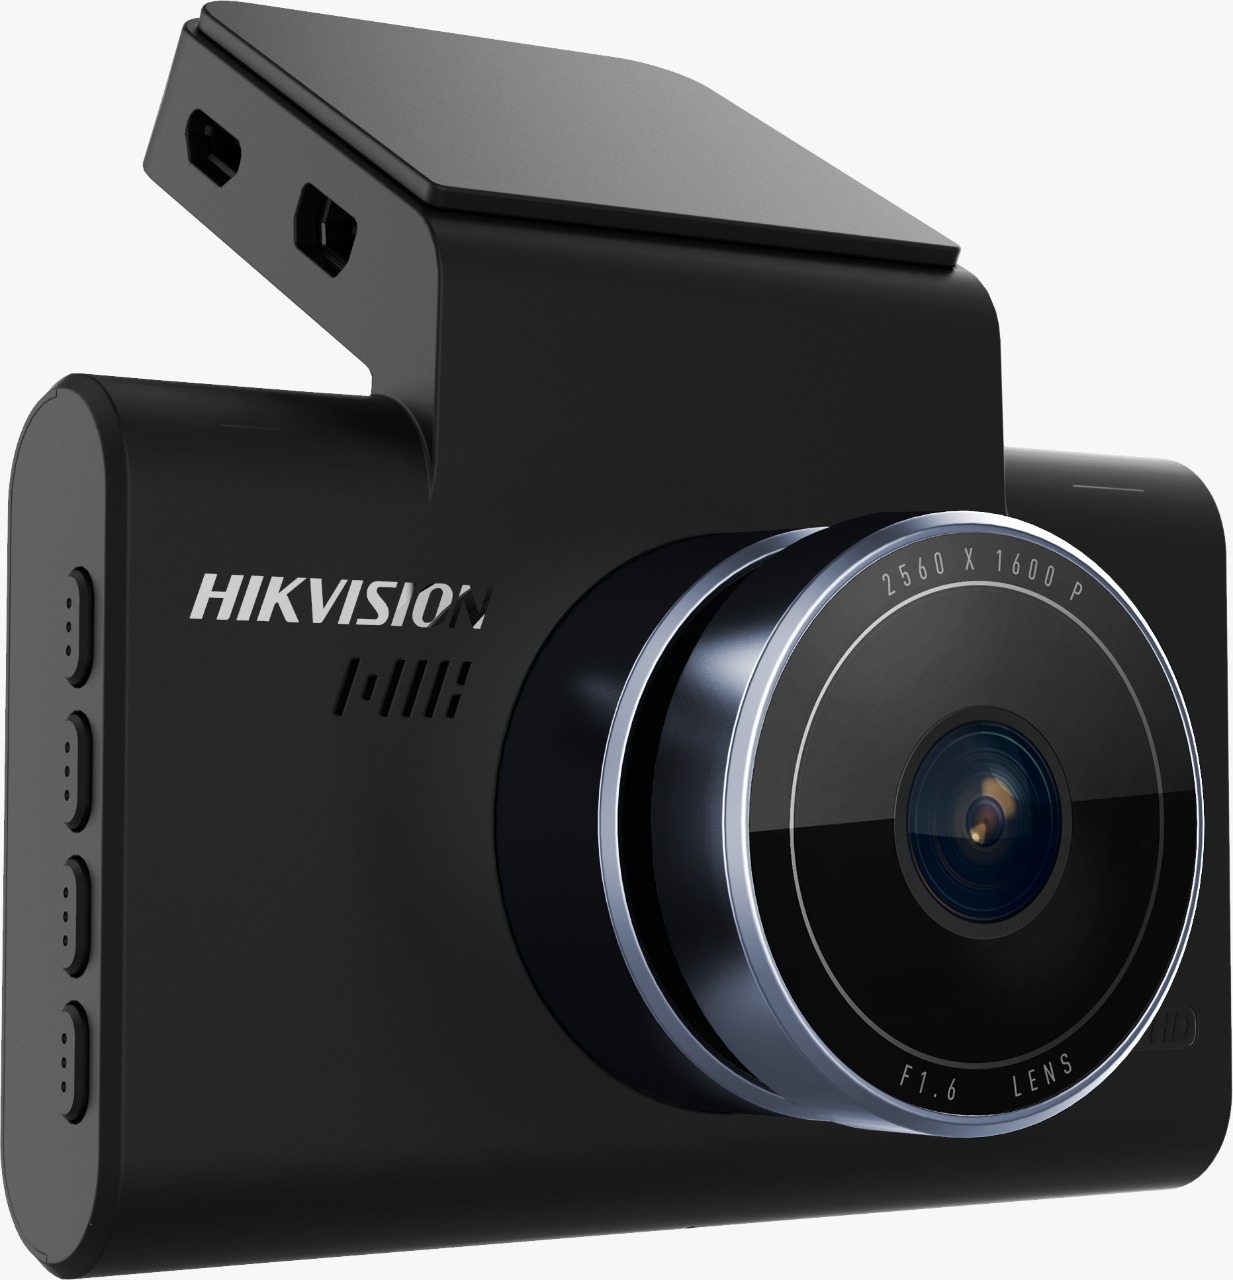 Hikvision anticipa su línea de cámaras Dashcam